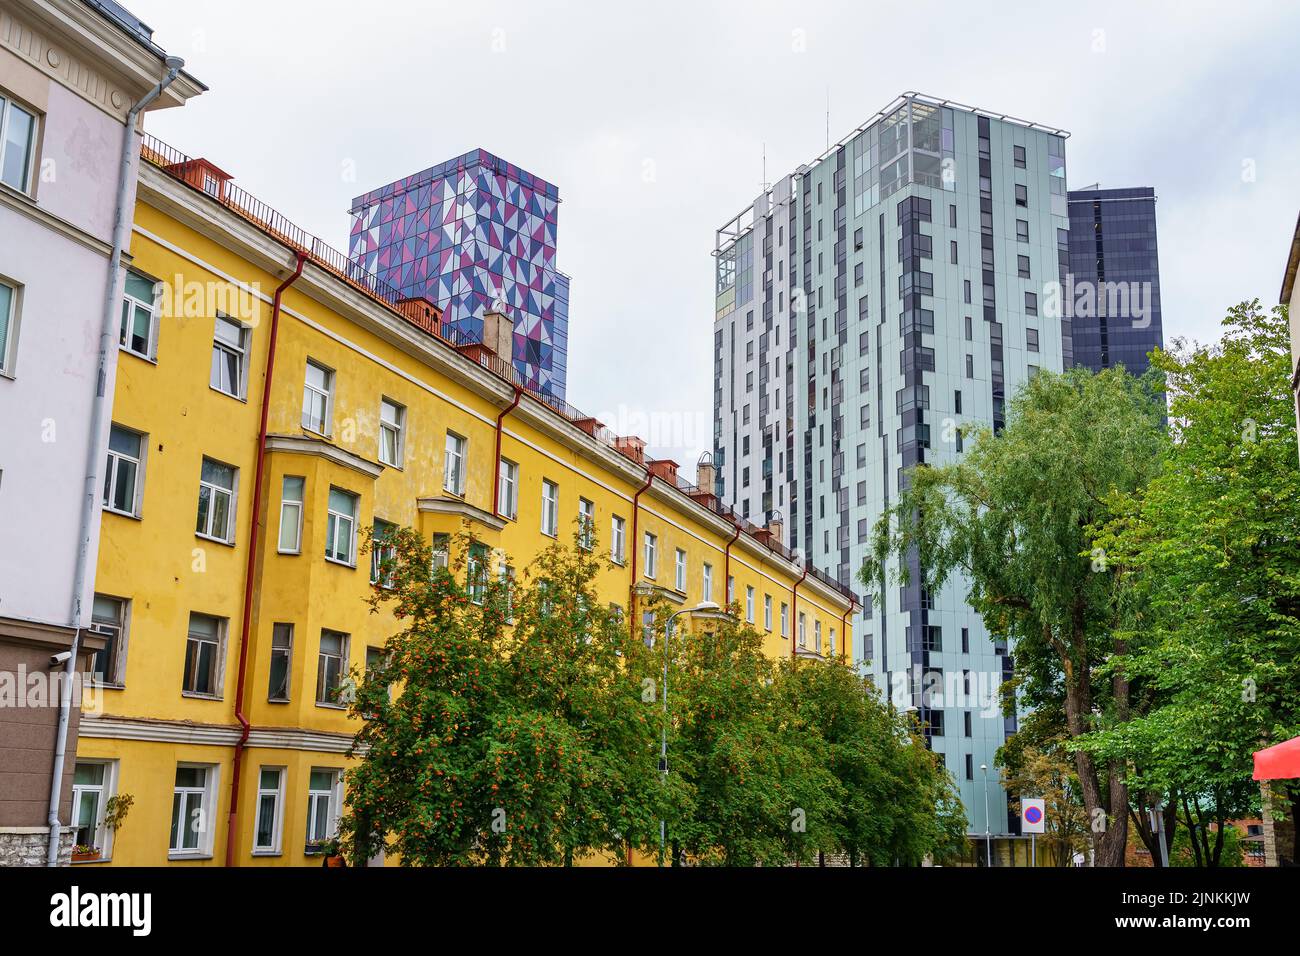 Edifici alti e moderni vicino a vecchi edifici residenziali. Tallinn Estonia. Foto Stock